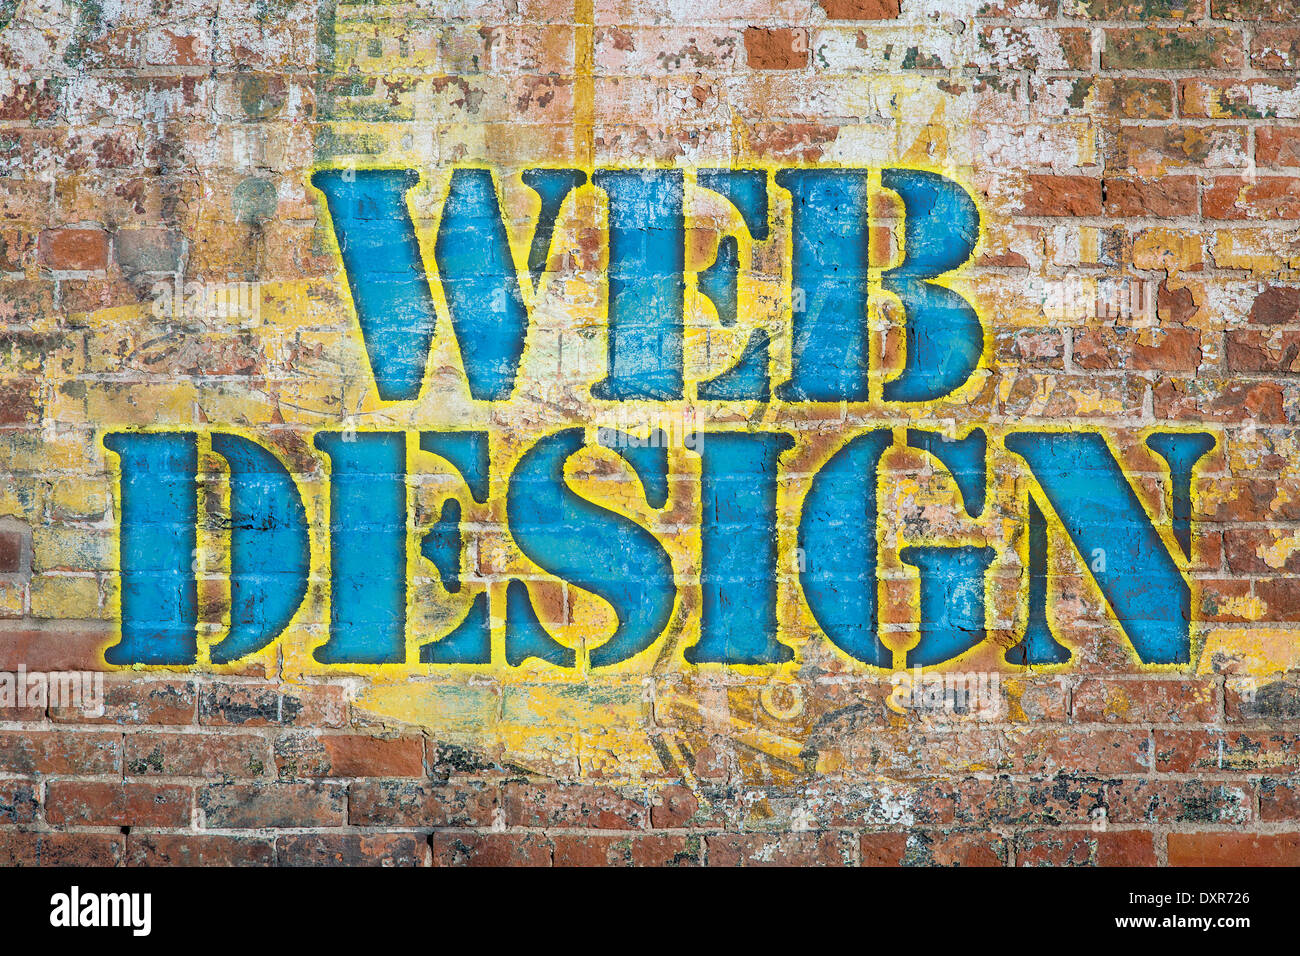 Web design, colorati graffiti di testo su un grunge muro di mattoni, grafica creata dal fotografo Foto Stock